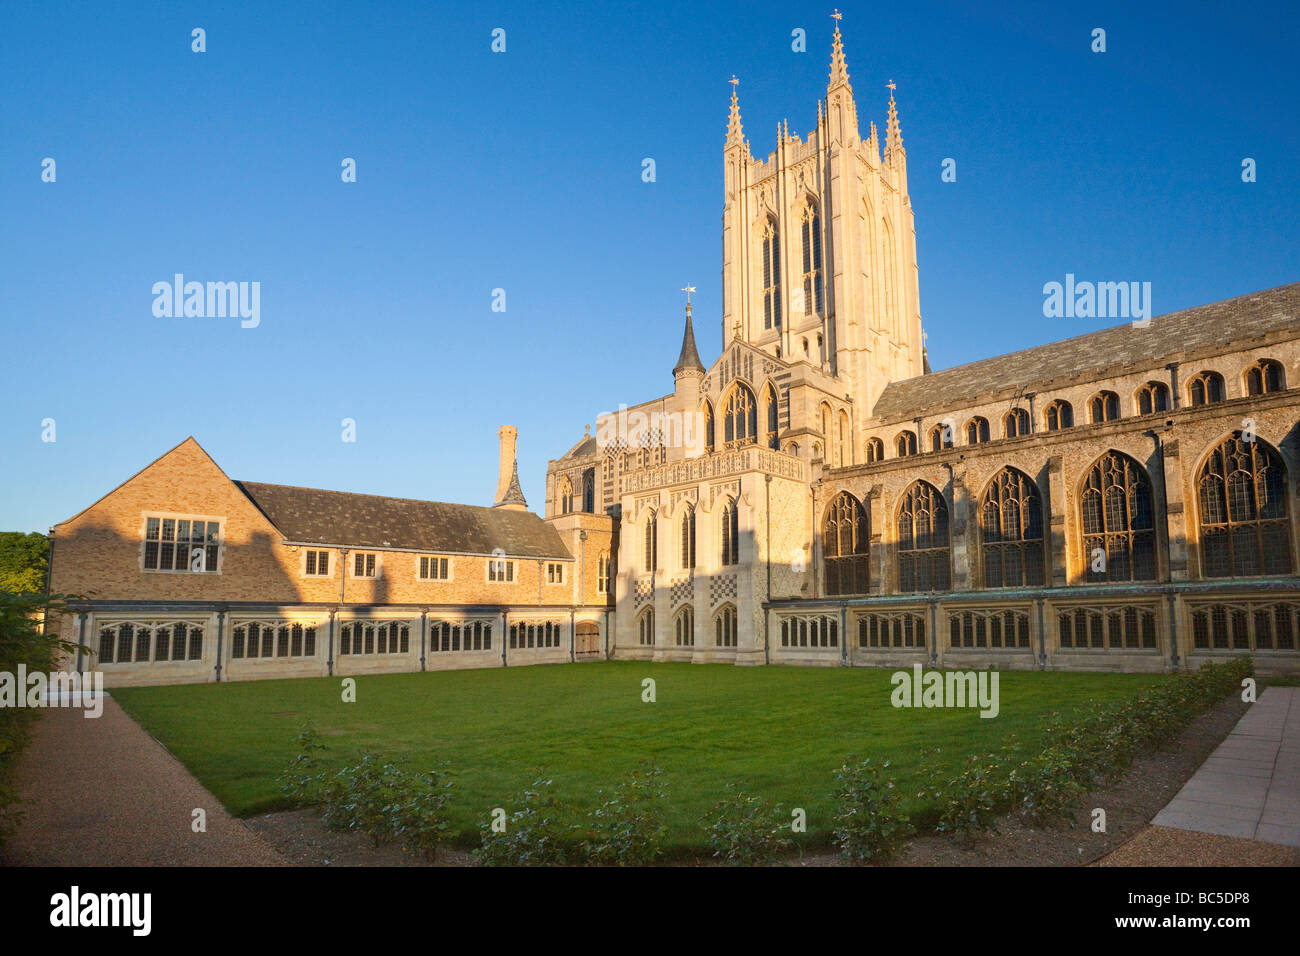 St James / St Edmundsbury Catedral de Bury St Edmunds, Suffolk, Reino Unido Foto de stock